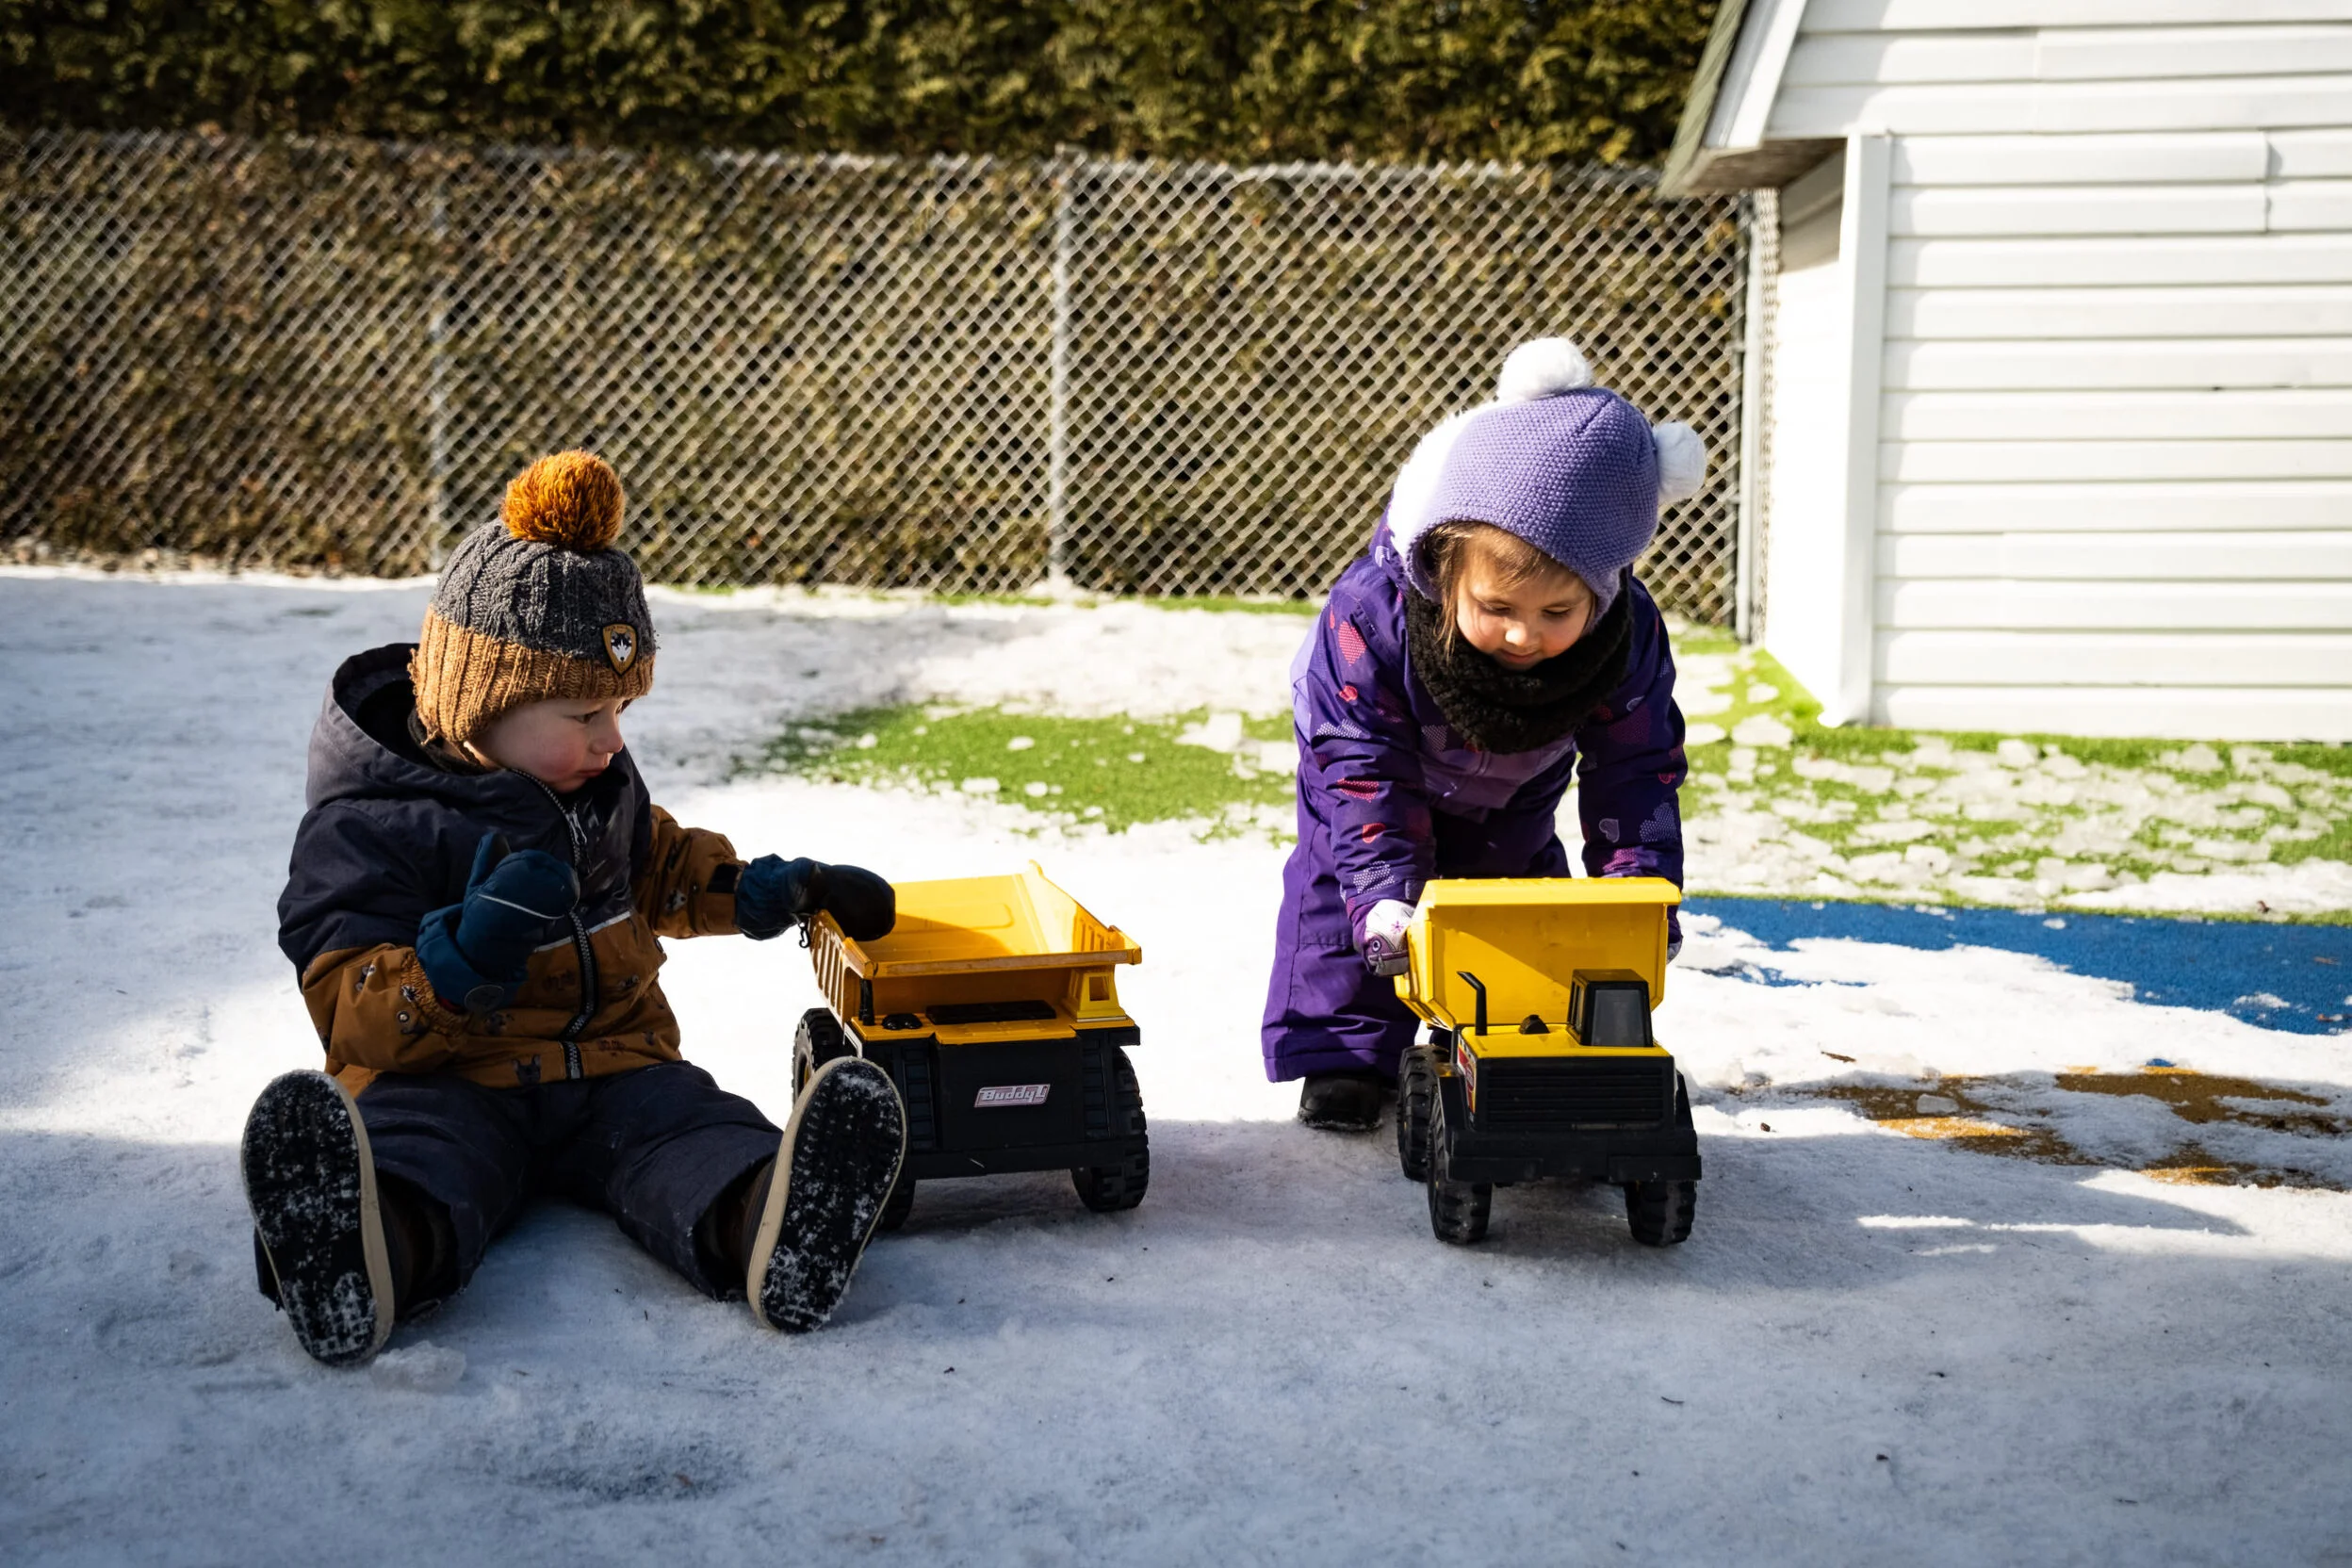 Les enfants ont accès à des jeux et jouets extérieurs adaptés à la saison froide.